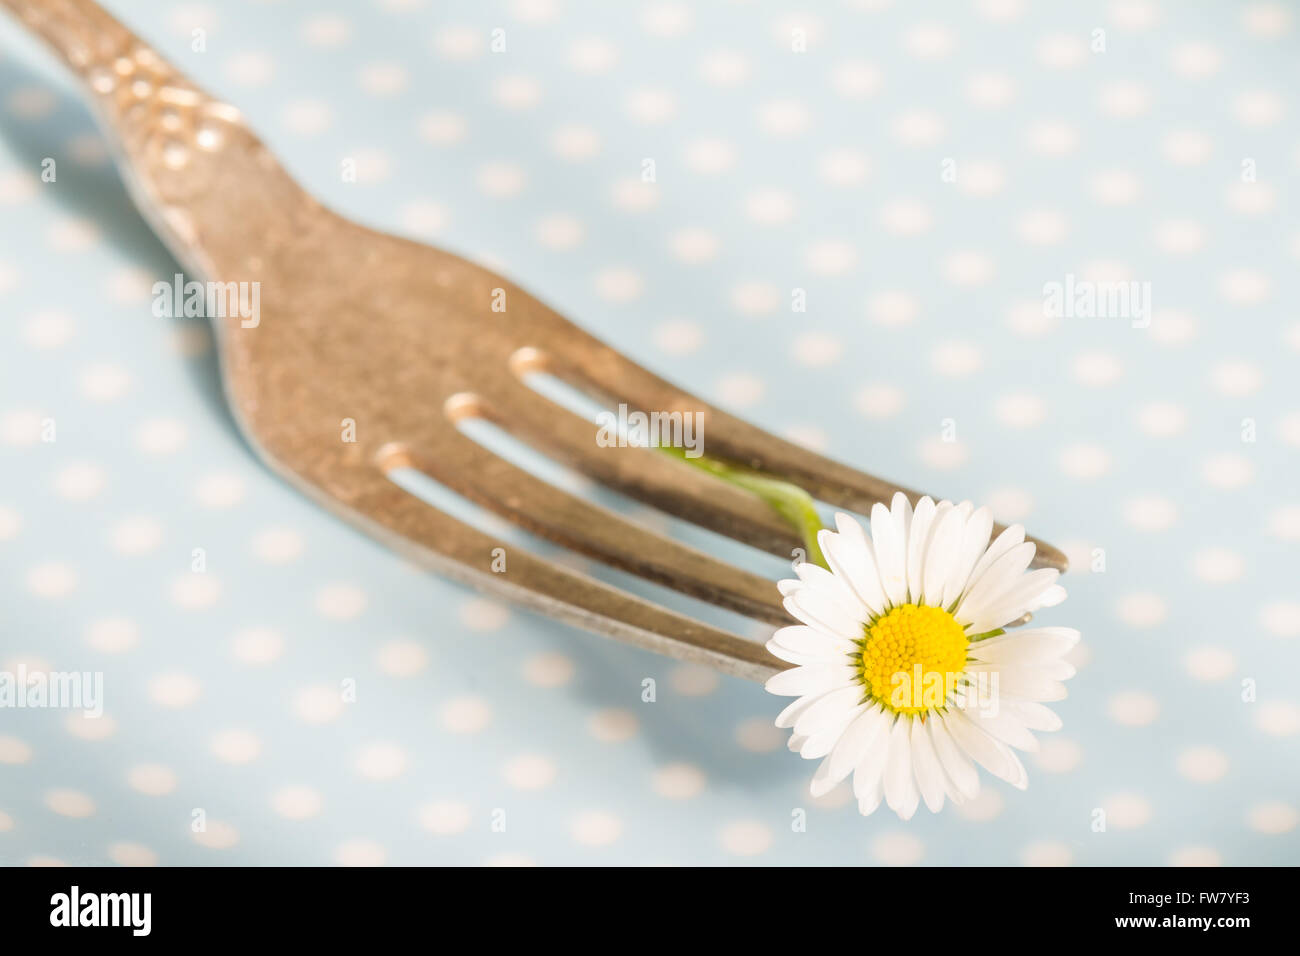 Frühling Essen abstrakten Hintergrund mit Daisy auf der Gabel-Nahaufnahme Stockfoto